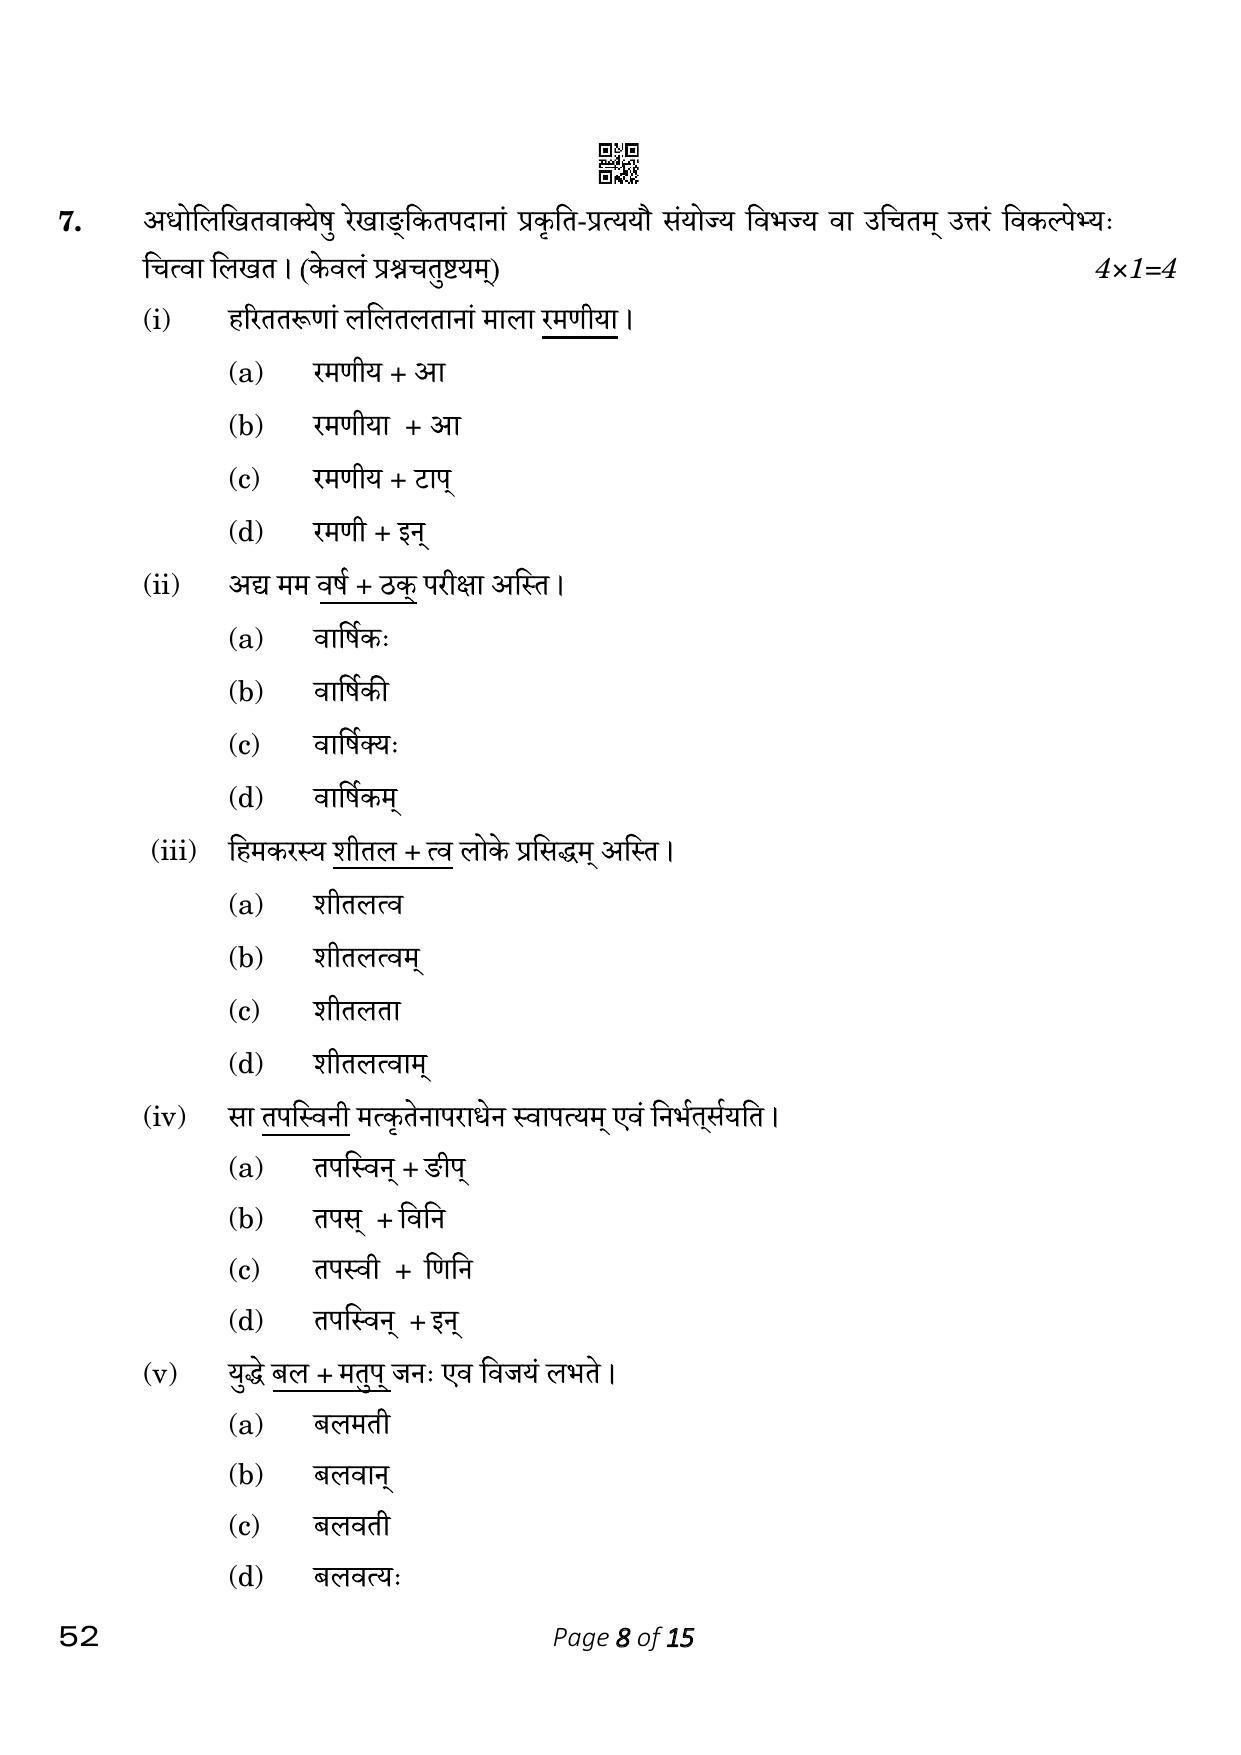 CBSE Class 10 Sanskrit (Compartment) 2023 Question Paper - Page 8